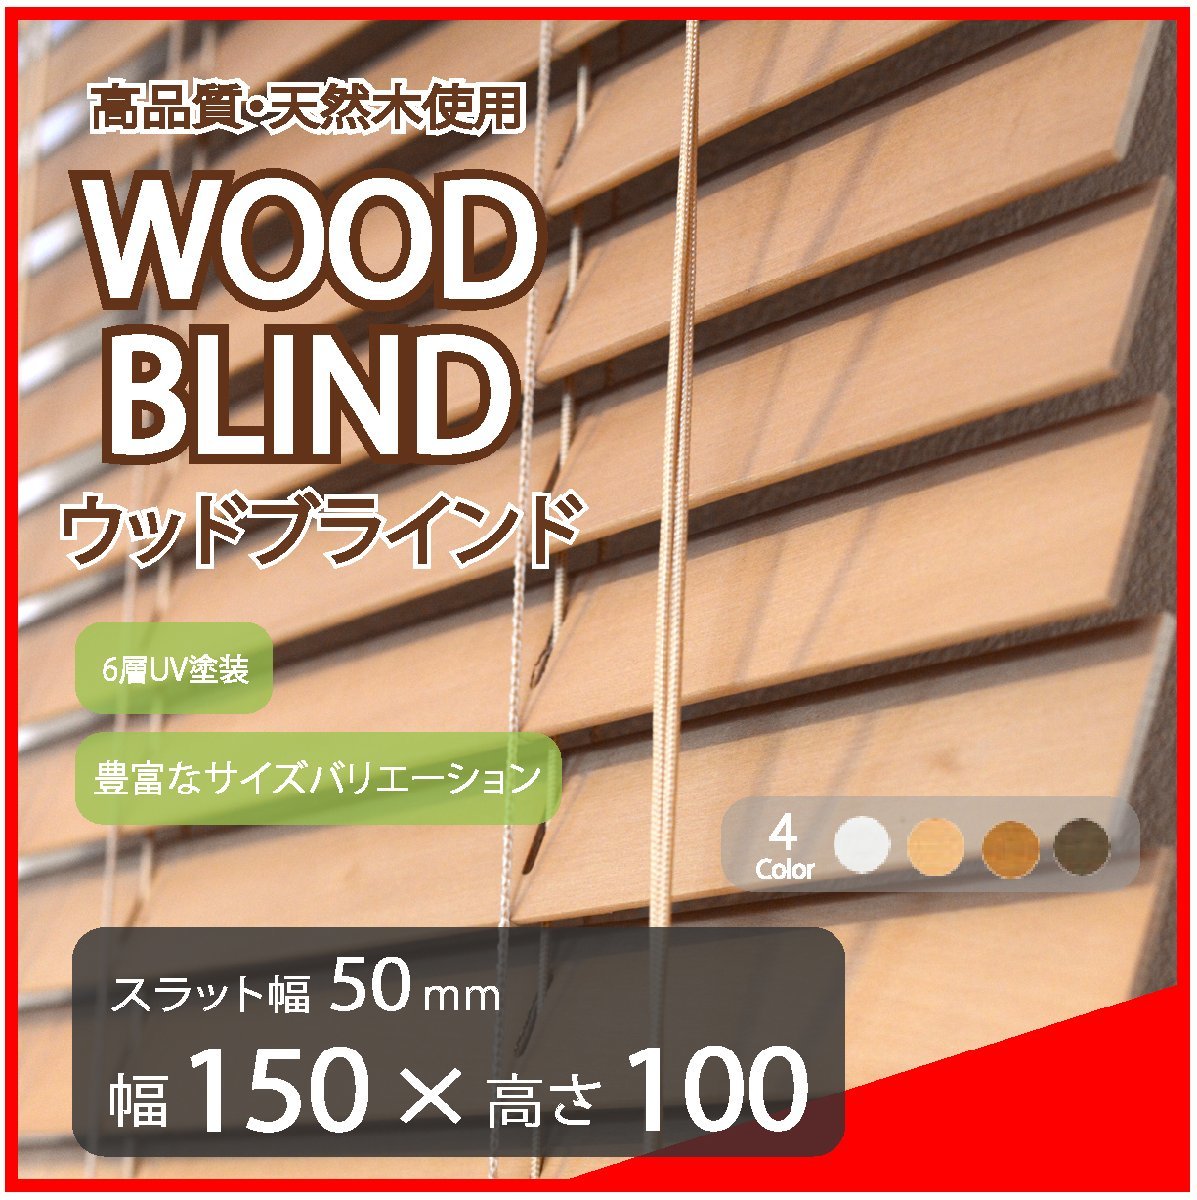 高品質 ウッドブラインド 木製 ブラインド 既成サイズ スラット(羽根)幅50mm 幅150cm×高さ100cm ライトブラウン